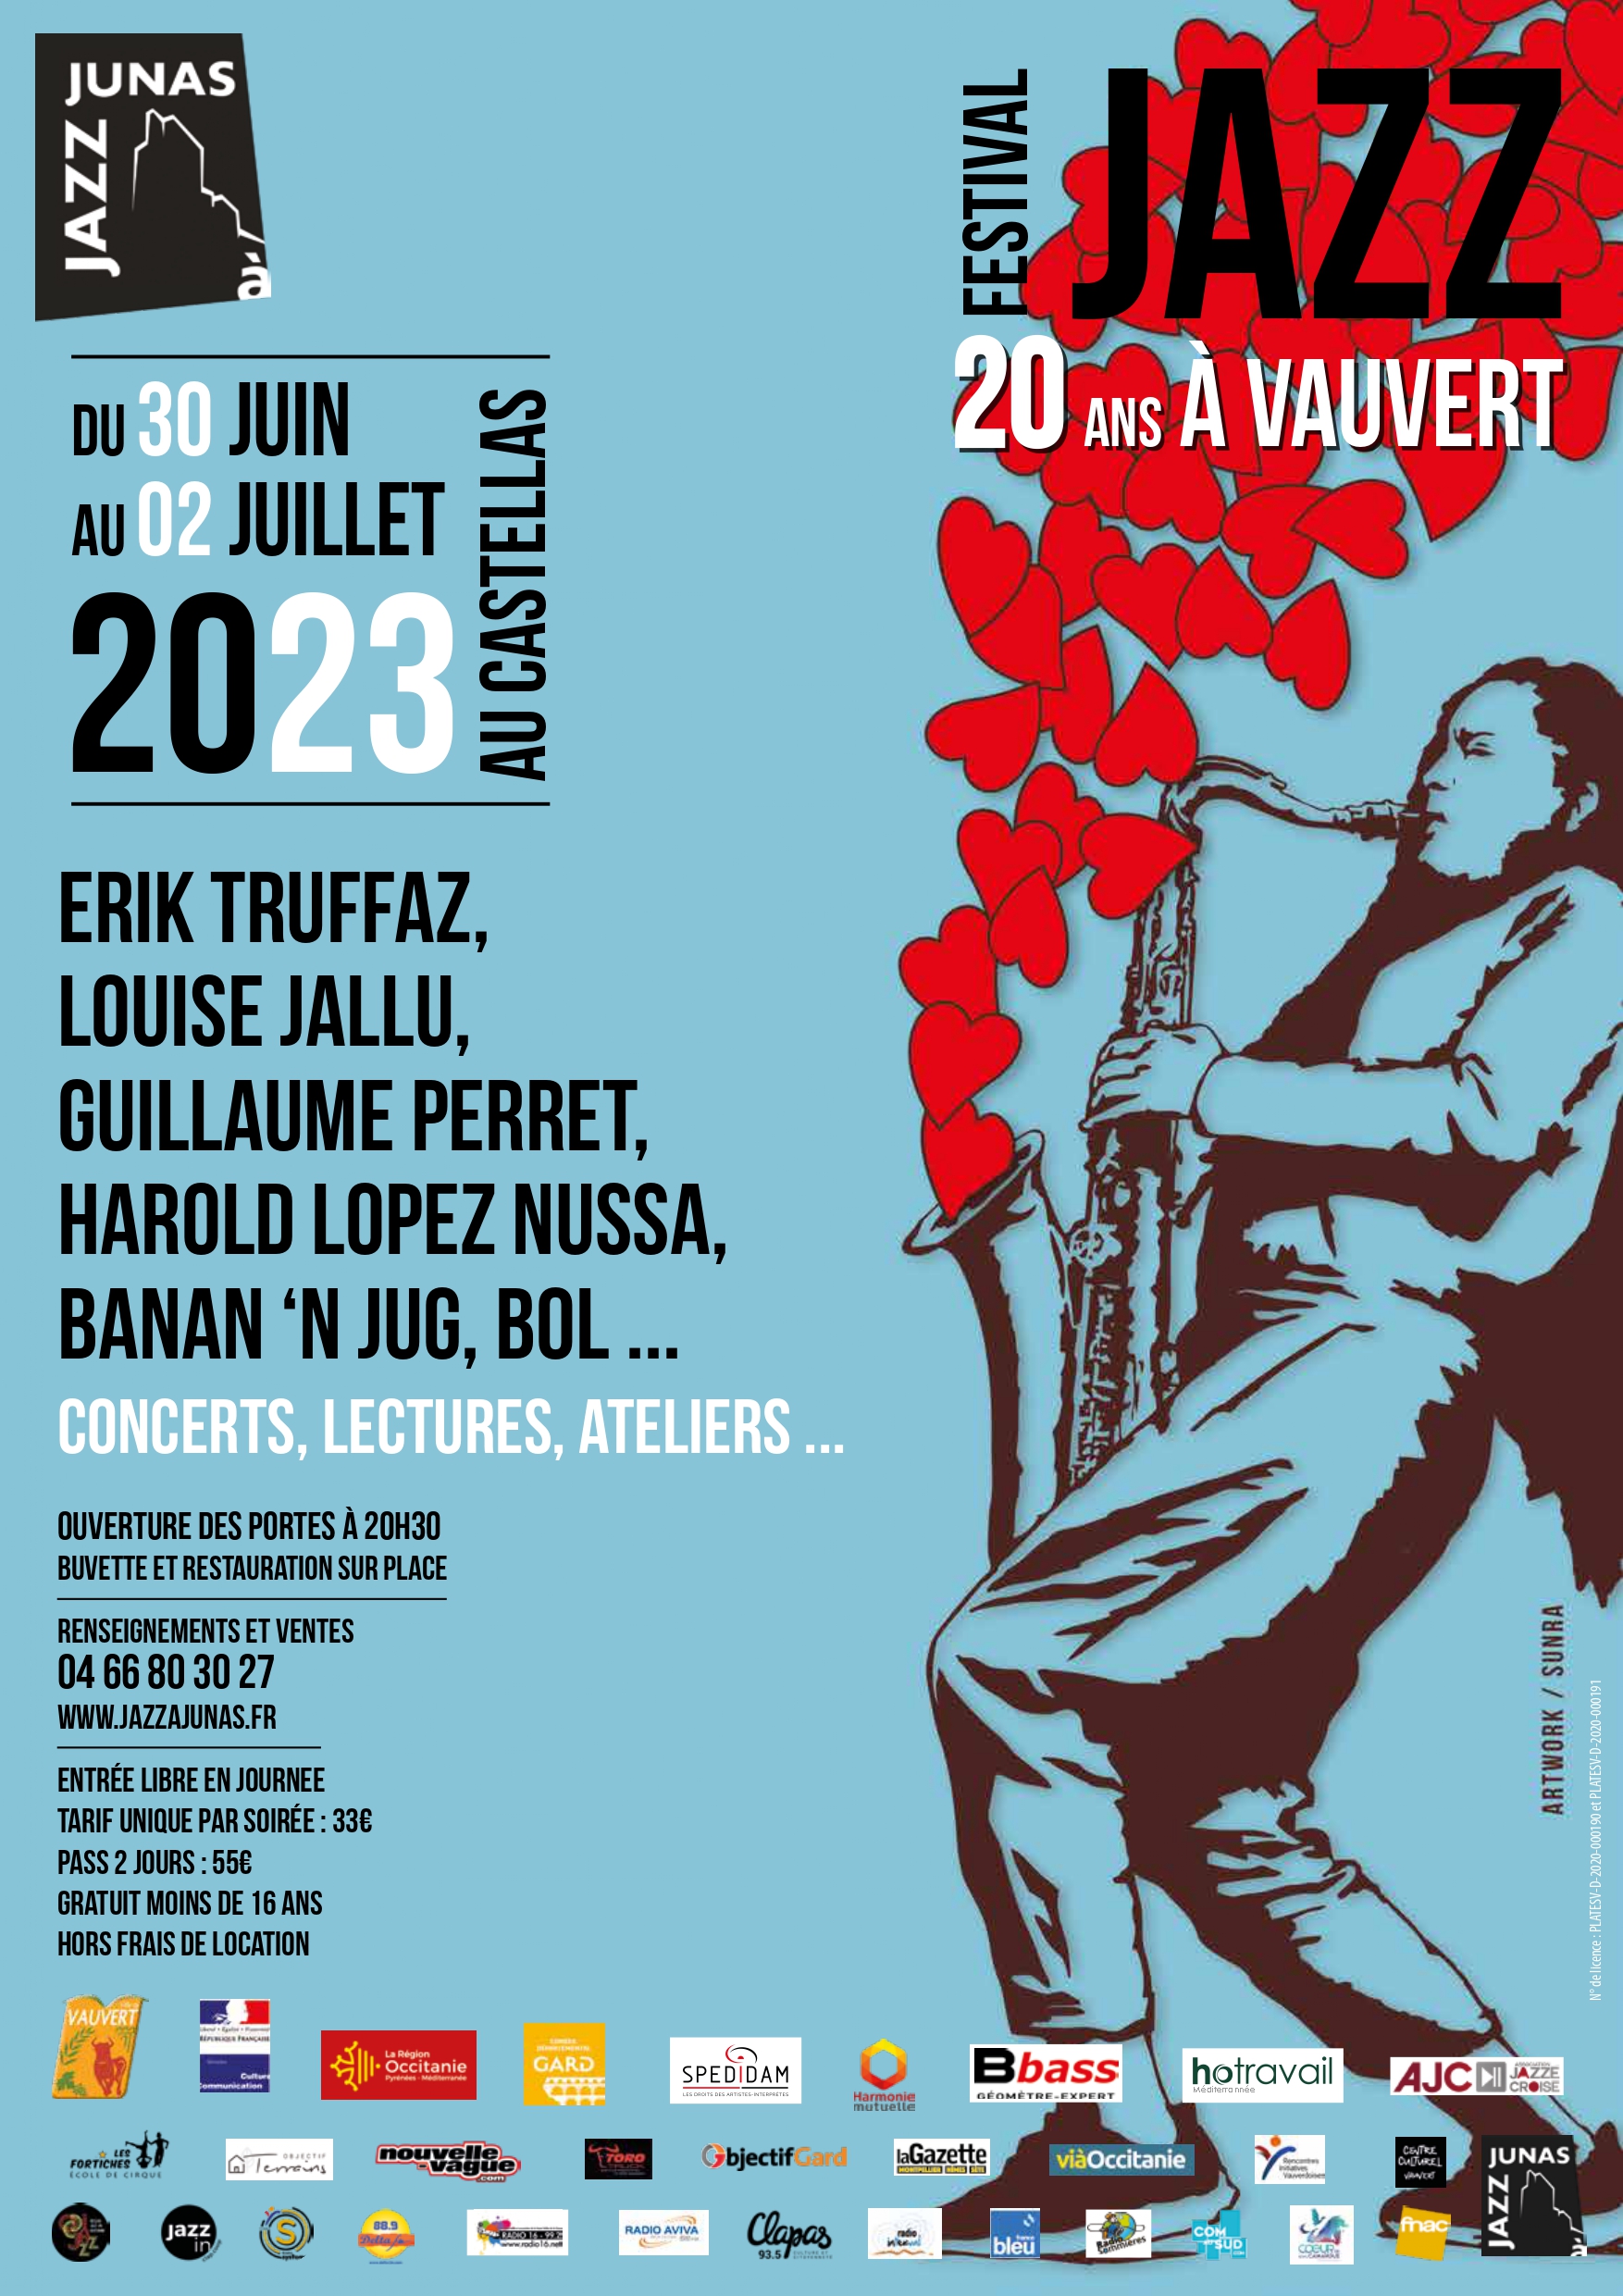 TEASER Festival Jazz à Vauvert 2023